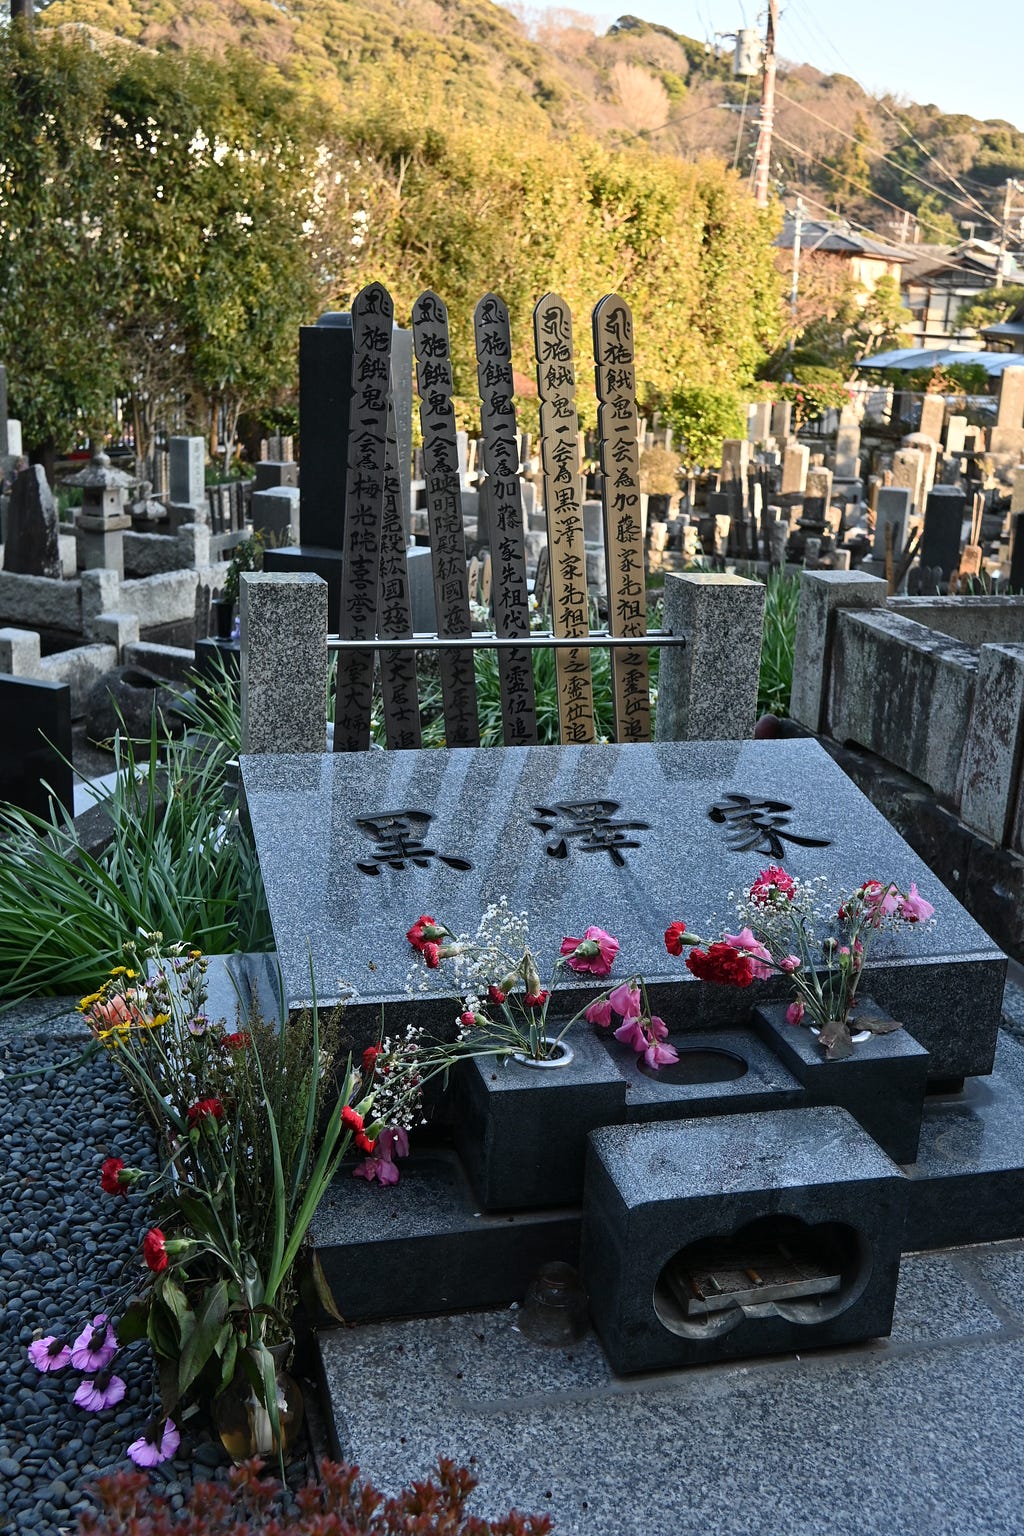 黑澤家族的墓在鐮倉市東邊的養生院旁，墓園並不開放給人參觀，但是還是有祭拜的小徑可以進入。安靜低調，我抵達時約下午3點半，整個墓園沒有半個訪客。